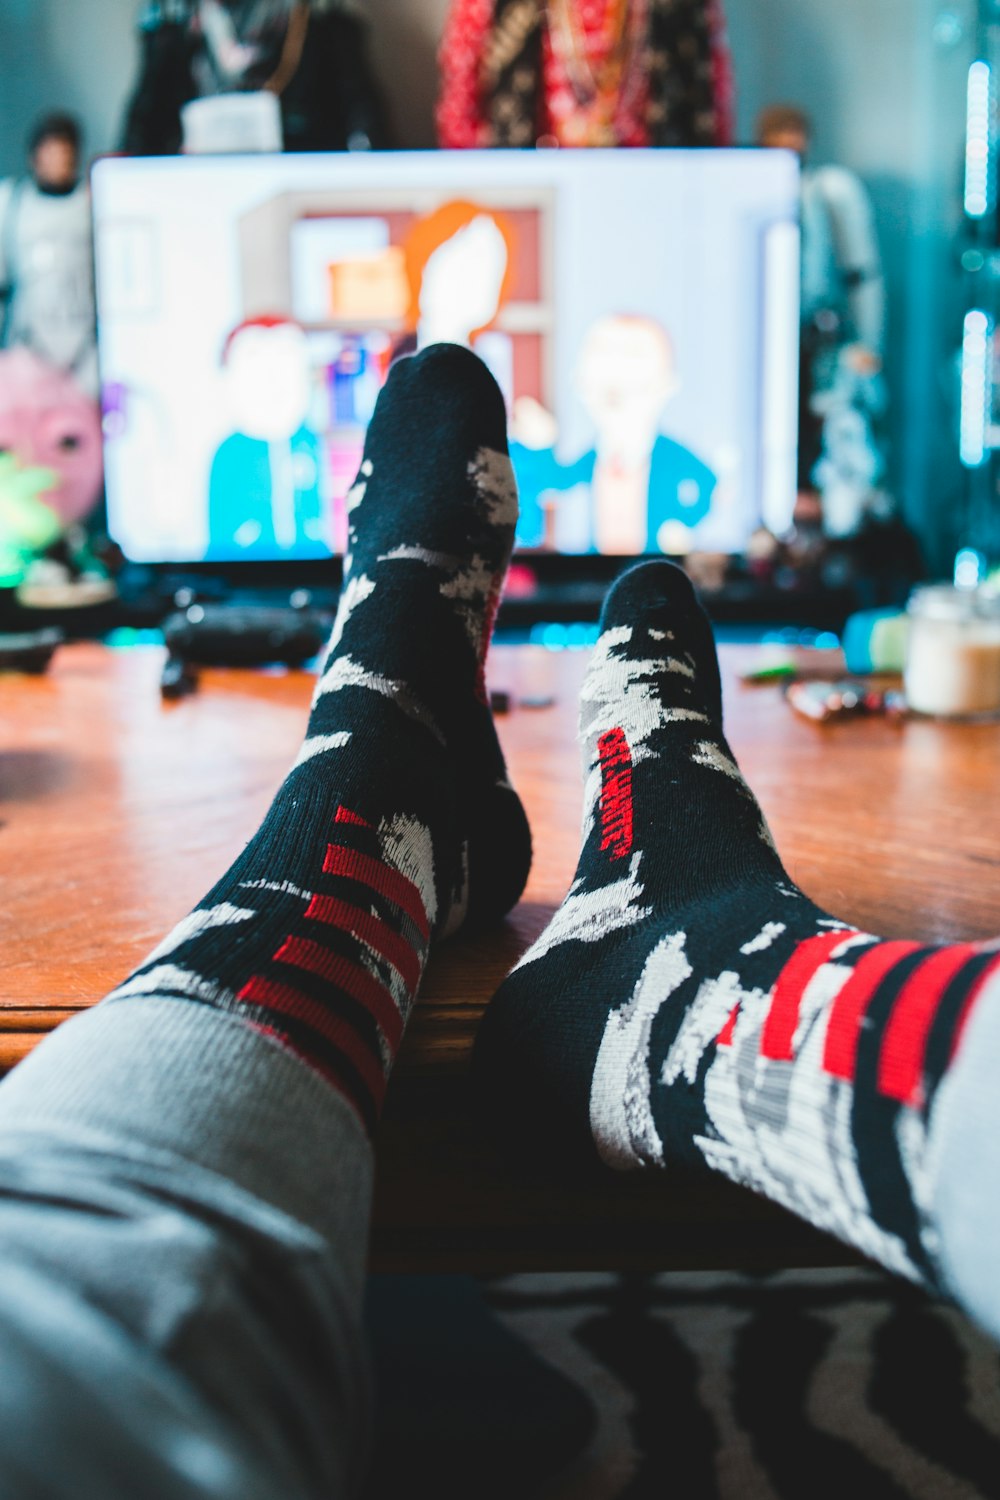 Foto Persona con calcetines negros – Imagen Meßstetten gratis en Unsplash